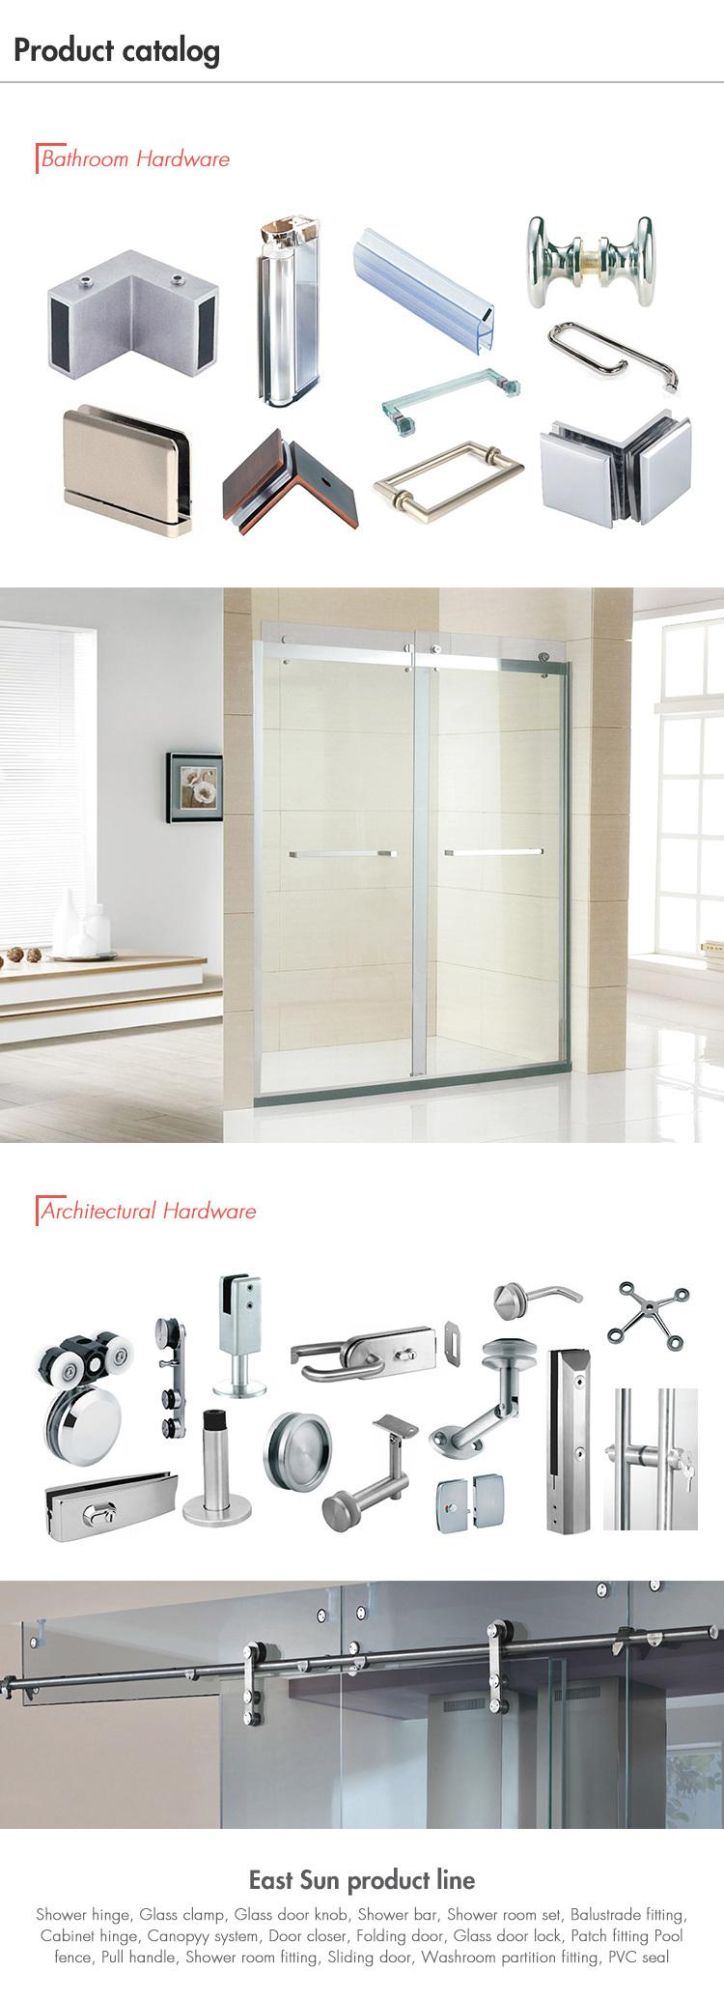 Bathroom Door Accessories Stainless Steel Pull Handle Glass Door Handle (pH-034)